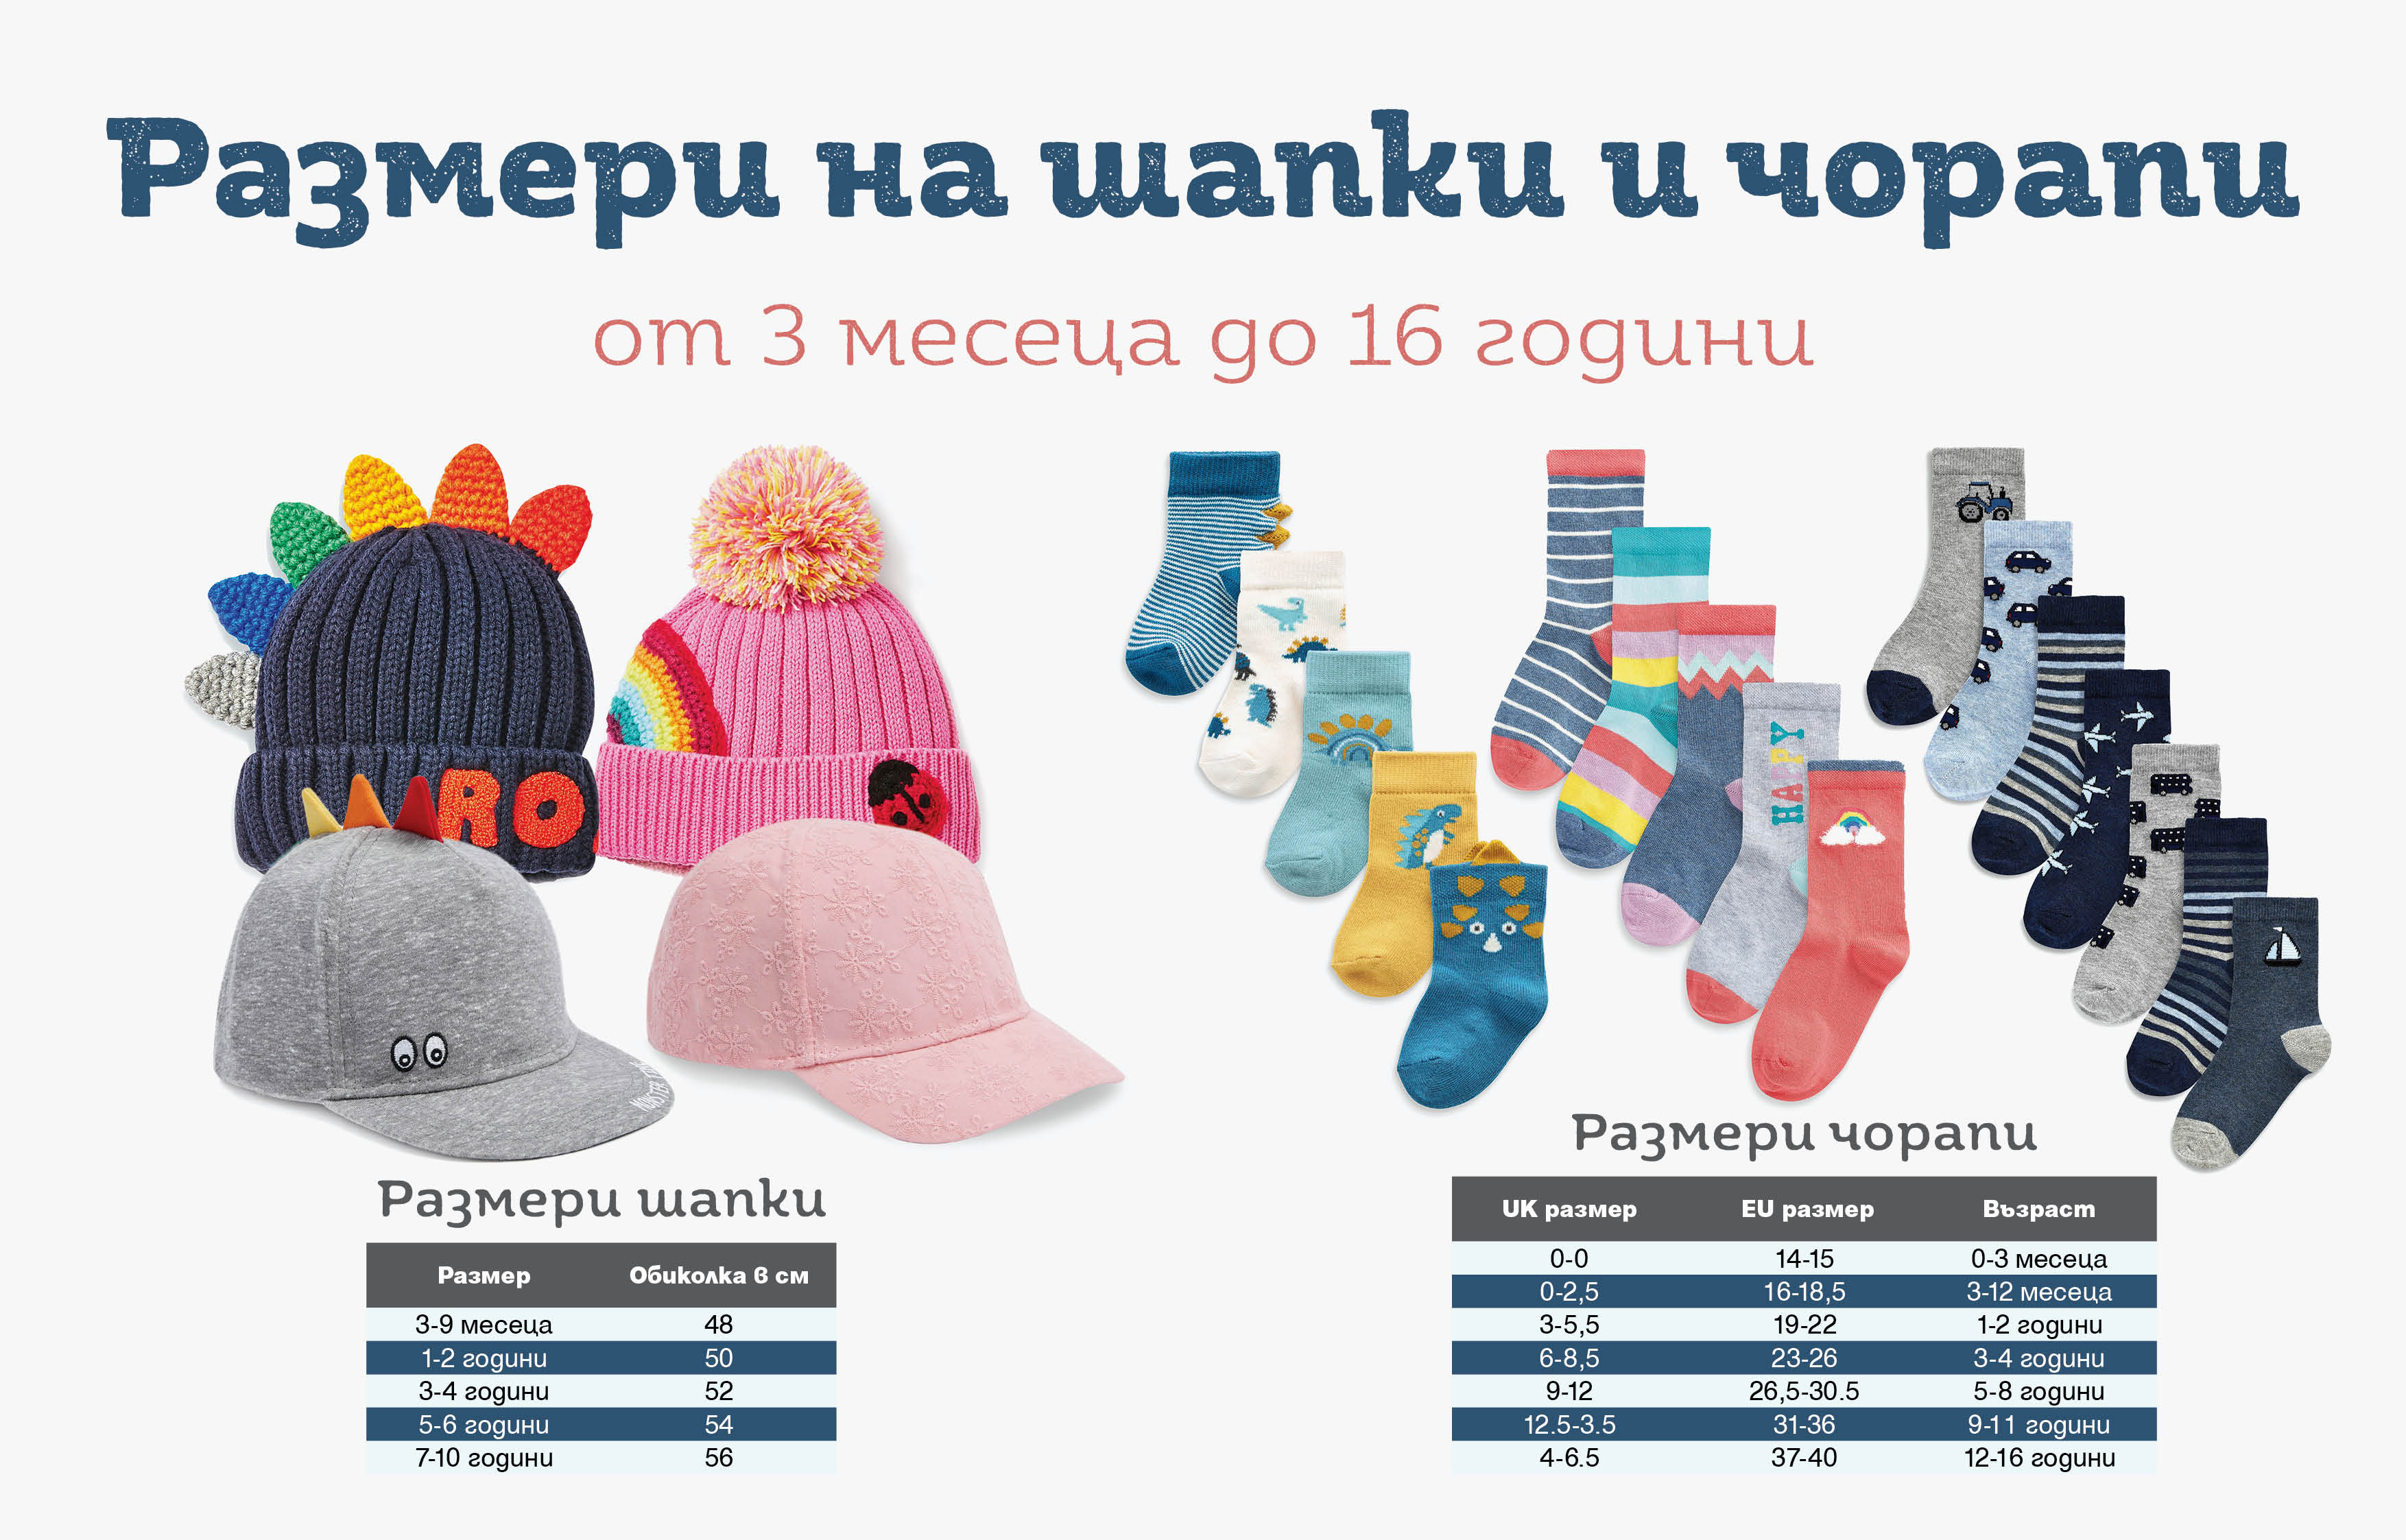 Размери шапки и чорапи